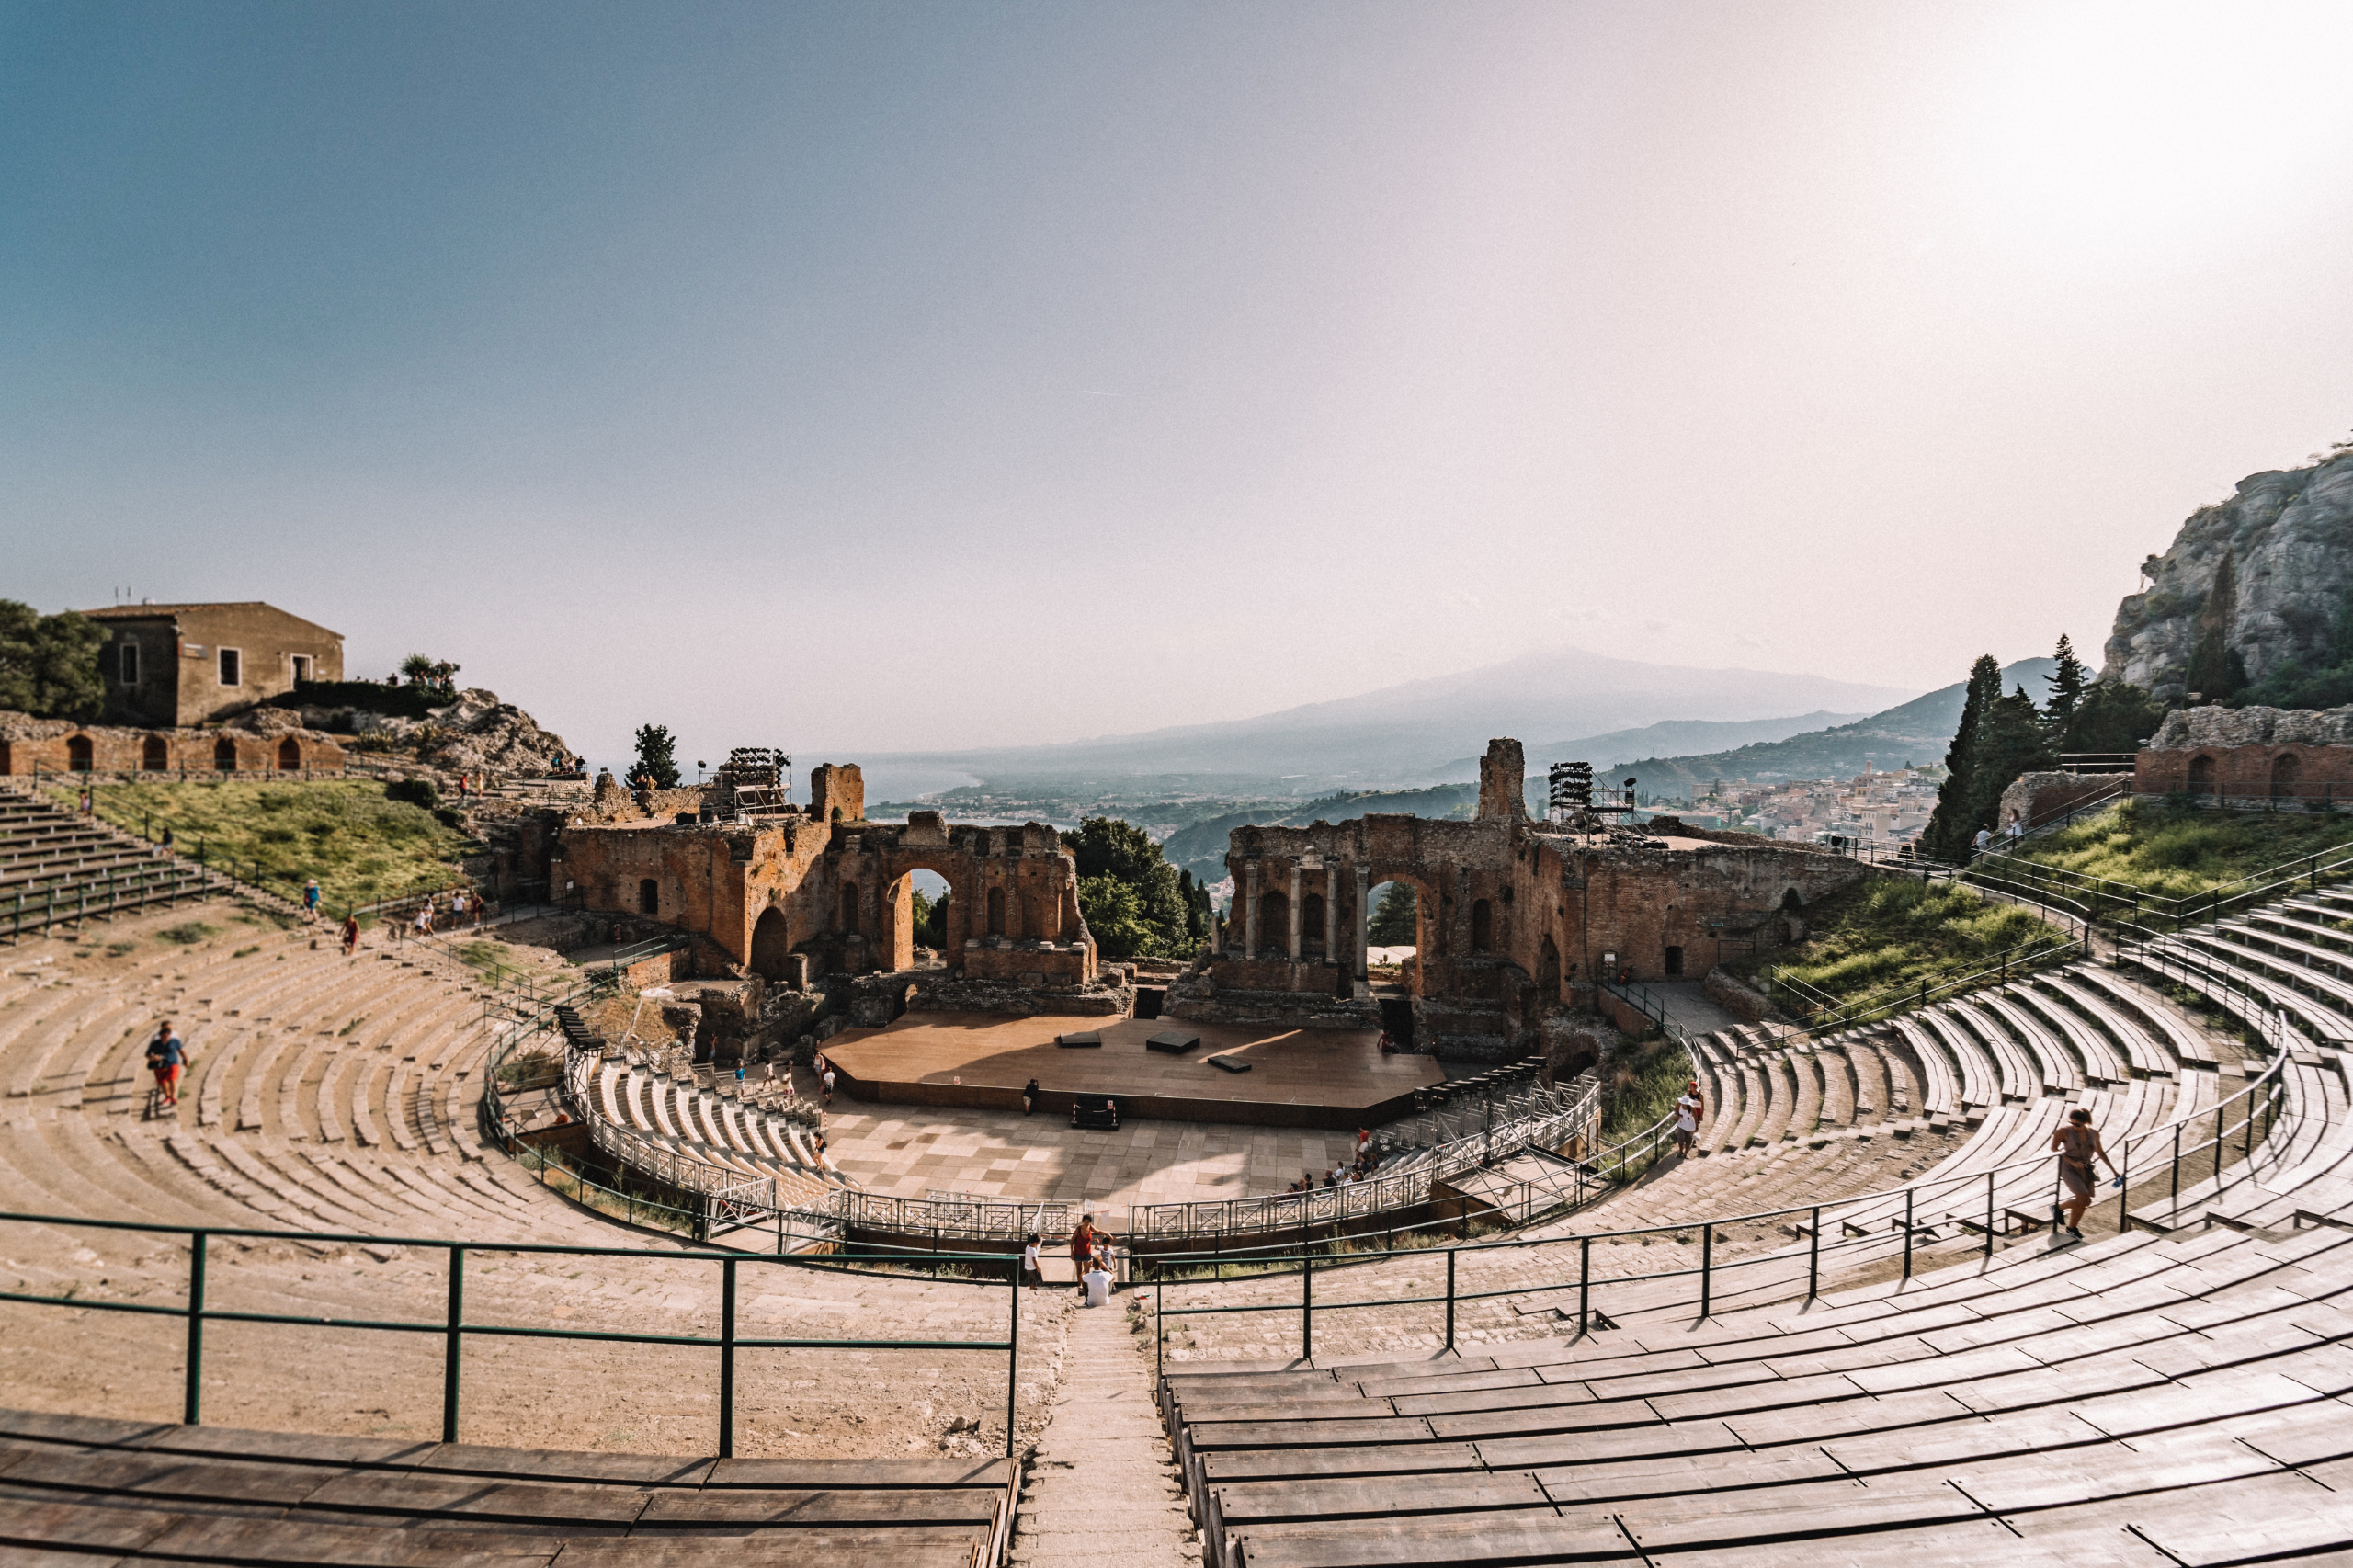  Das antike Theater in Taormina ist nur eines der vielen Highlights dieses Dörfchens an den Hängen Siziliens. 